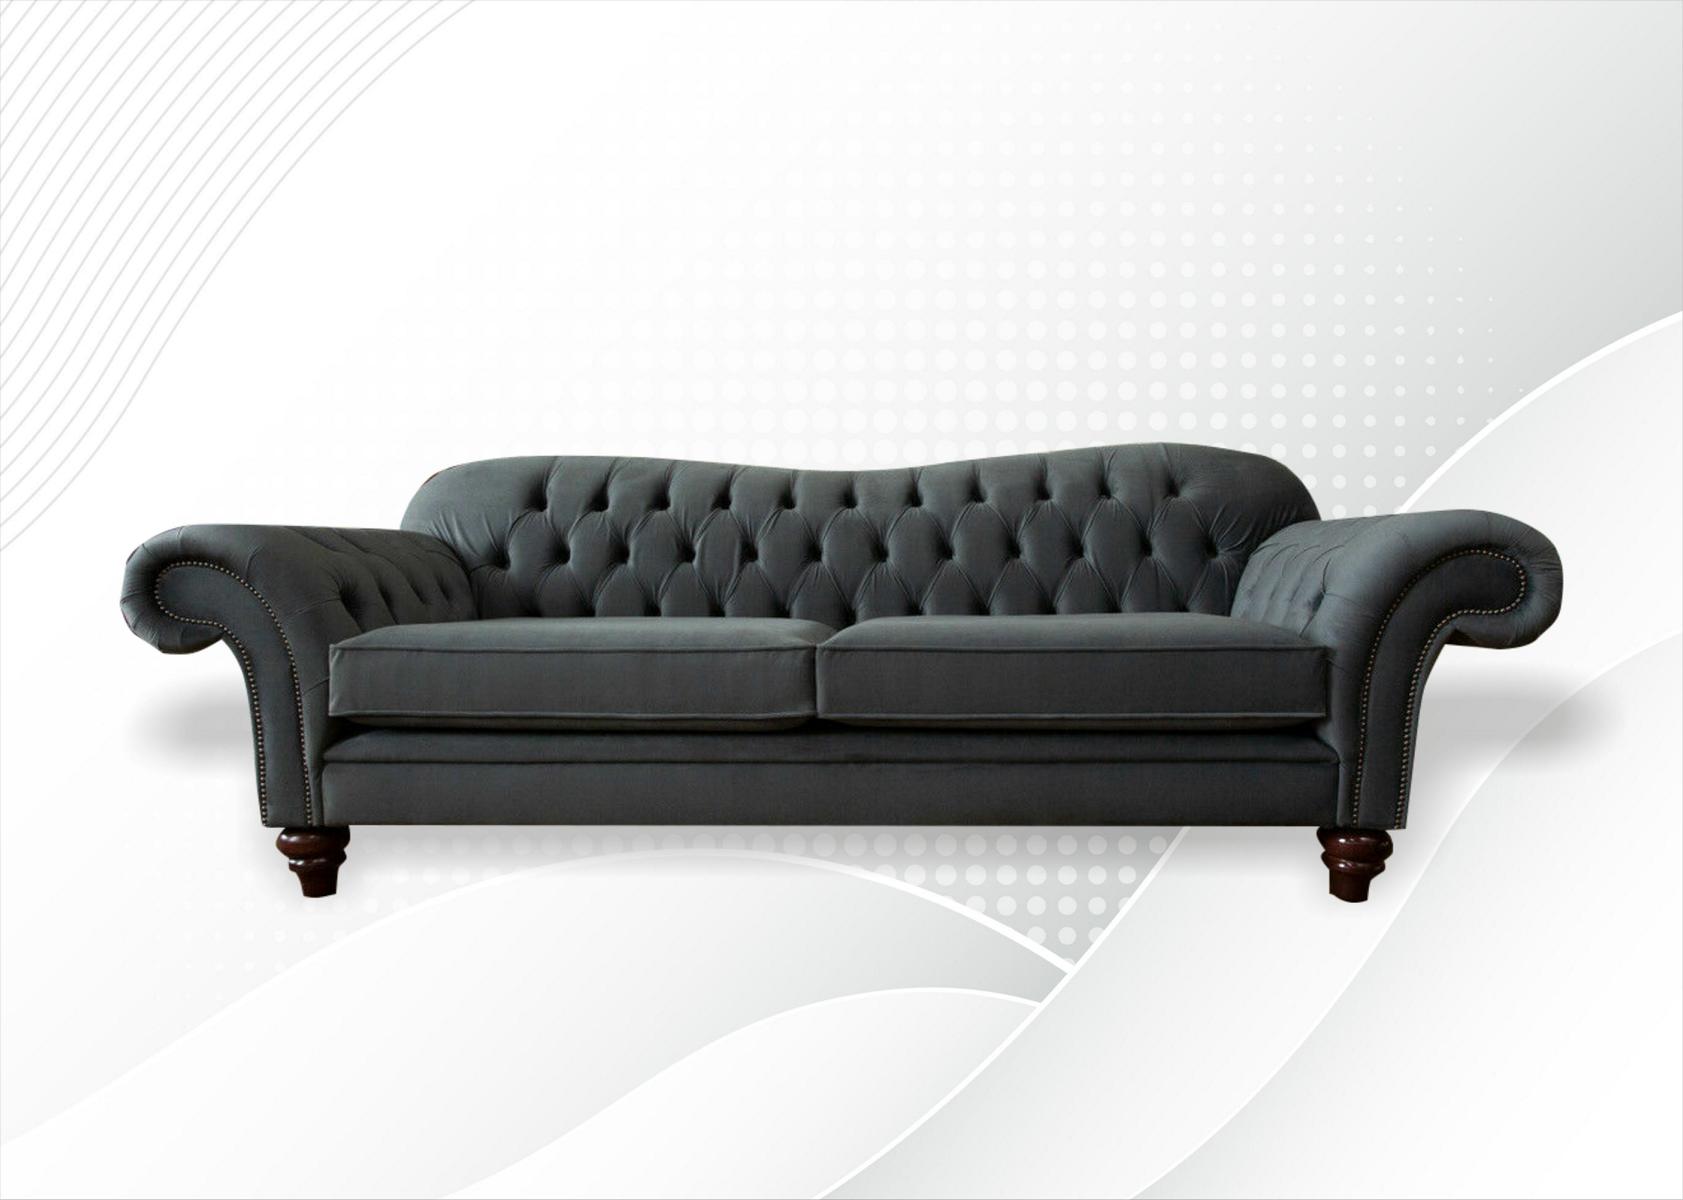 xxl Sofa 4 Sitzer Couch Chesterfield Polster Sitz Garnitur Leder Textil